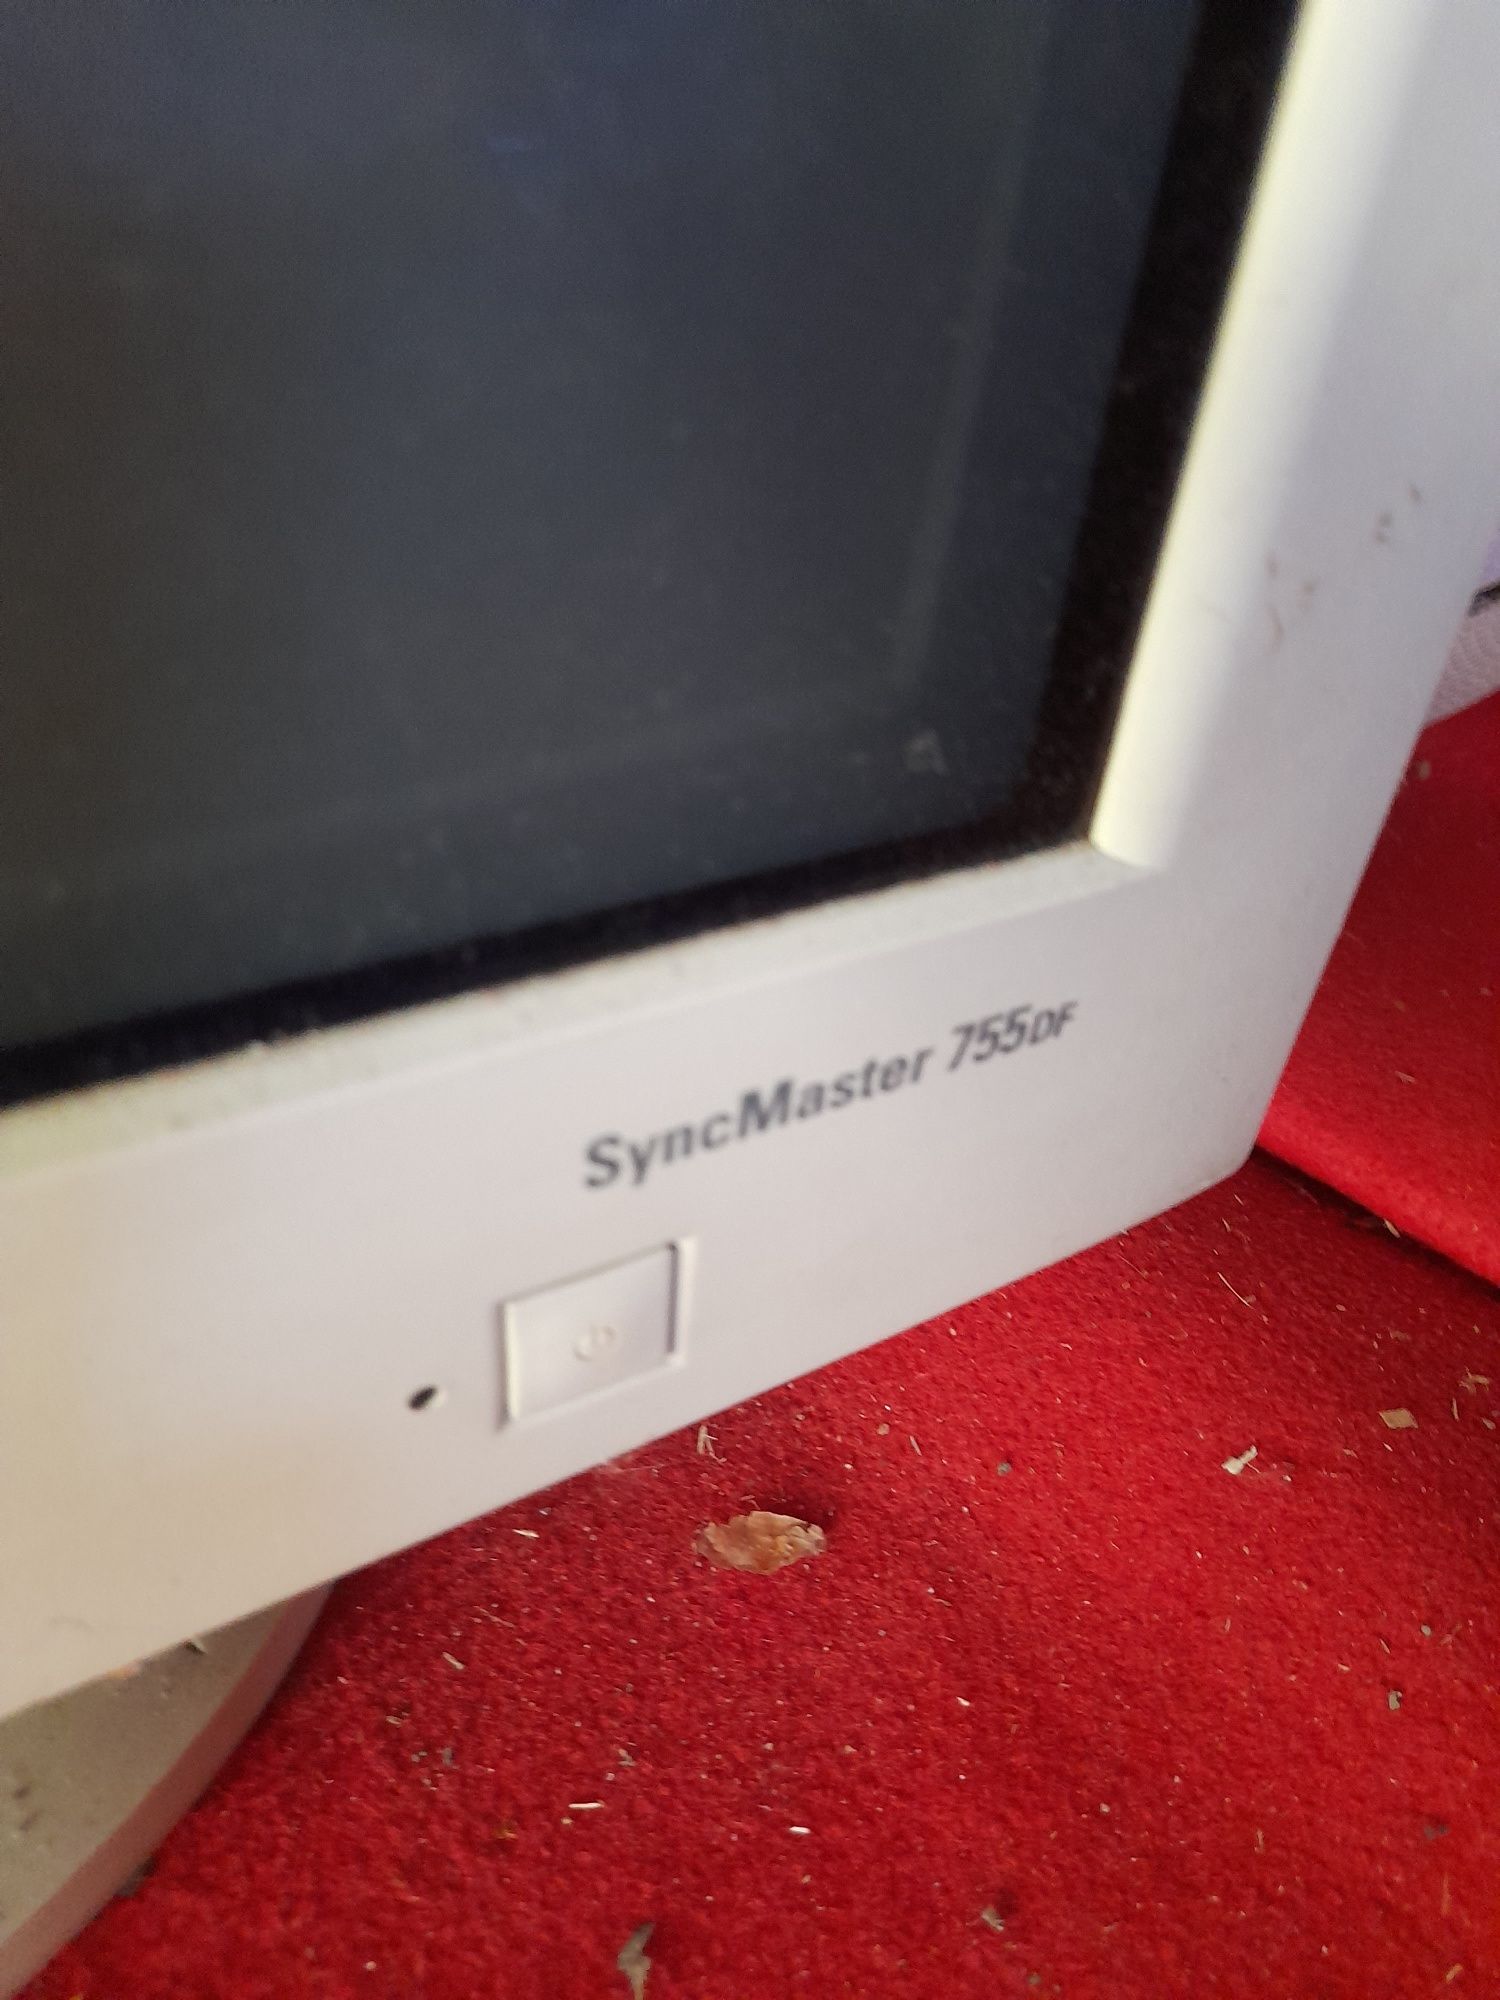 Sprzedam monitor Samsung SyncMastr 755DF